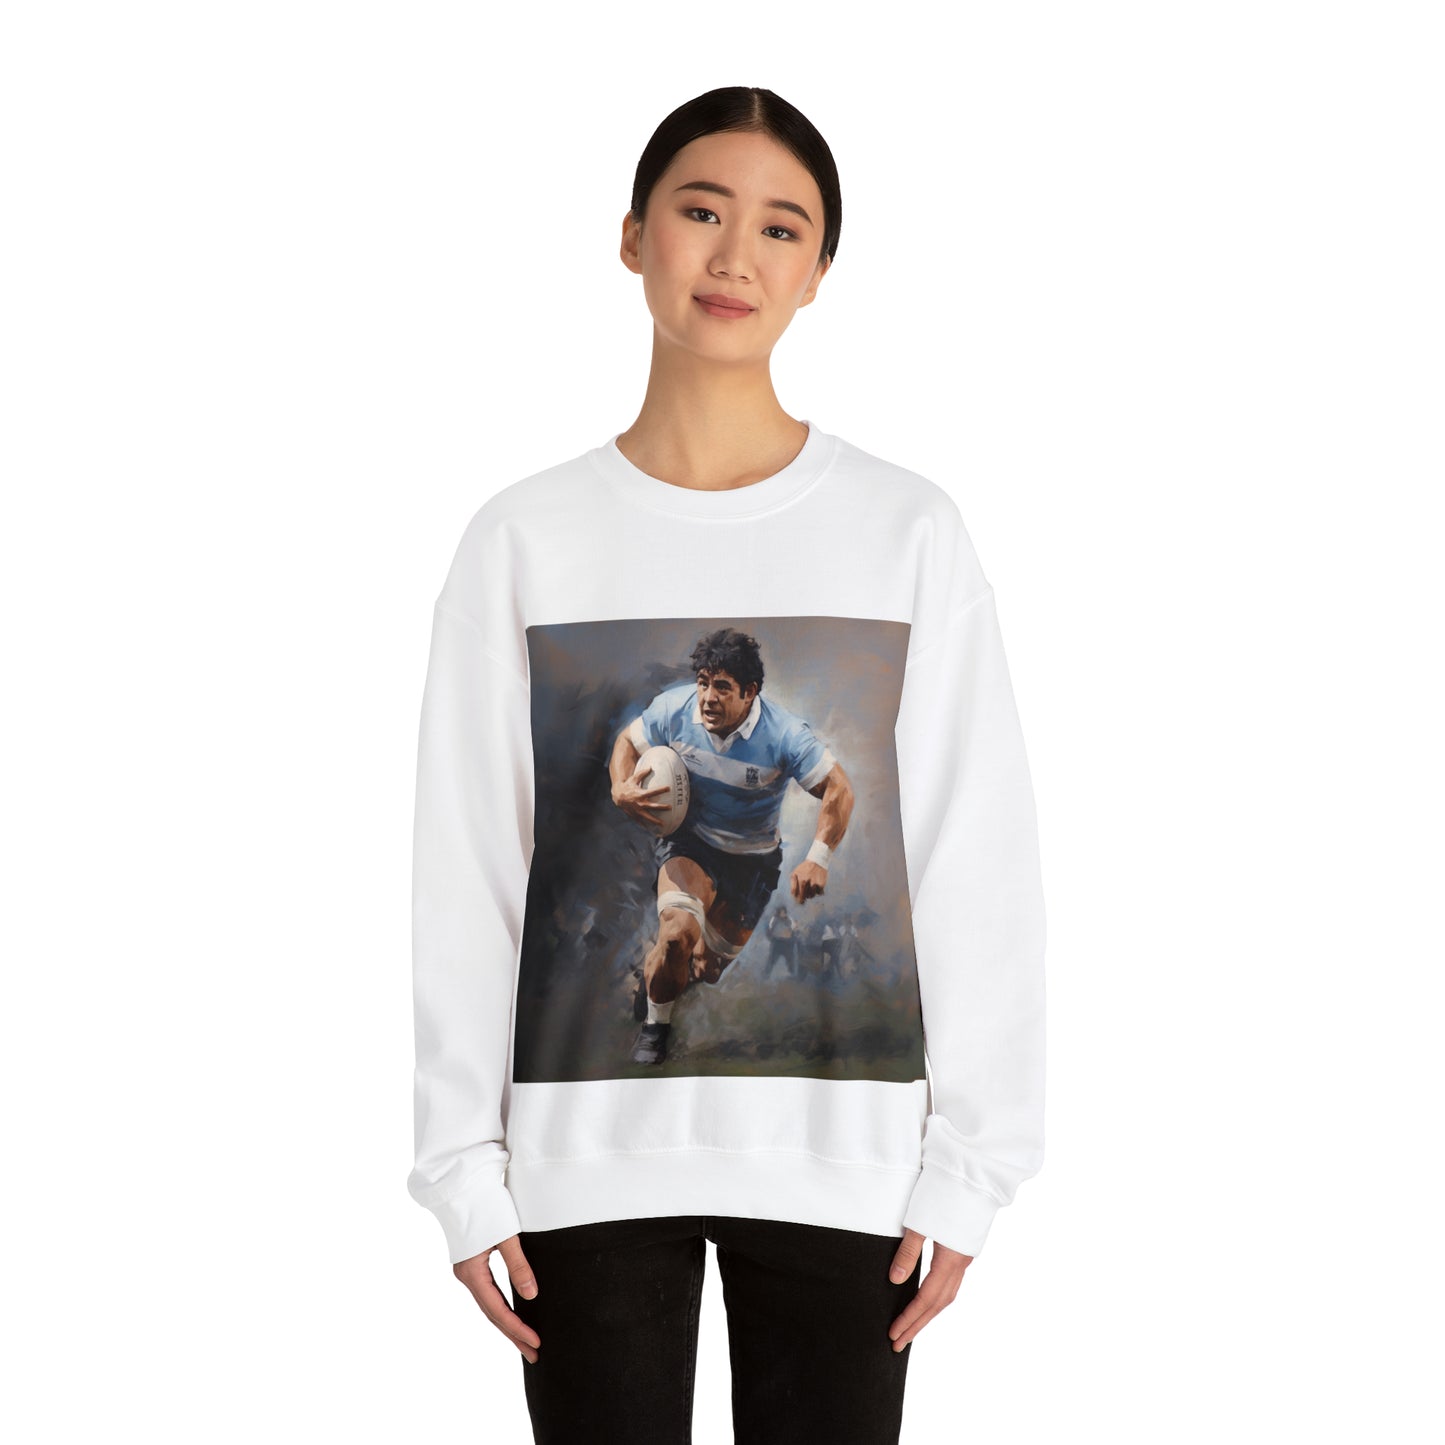 Rugby Maradona - light sweatshirts